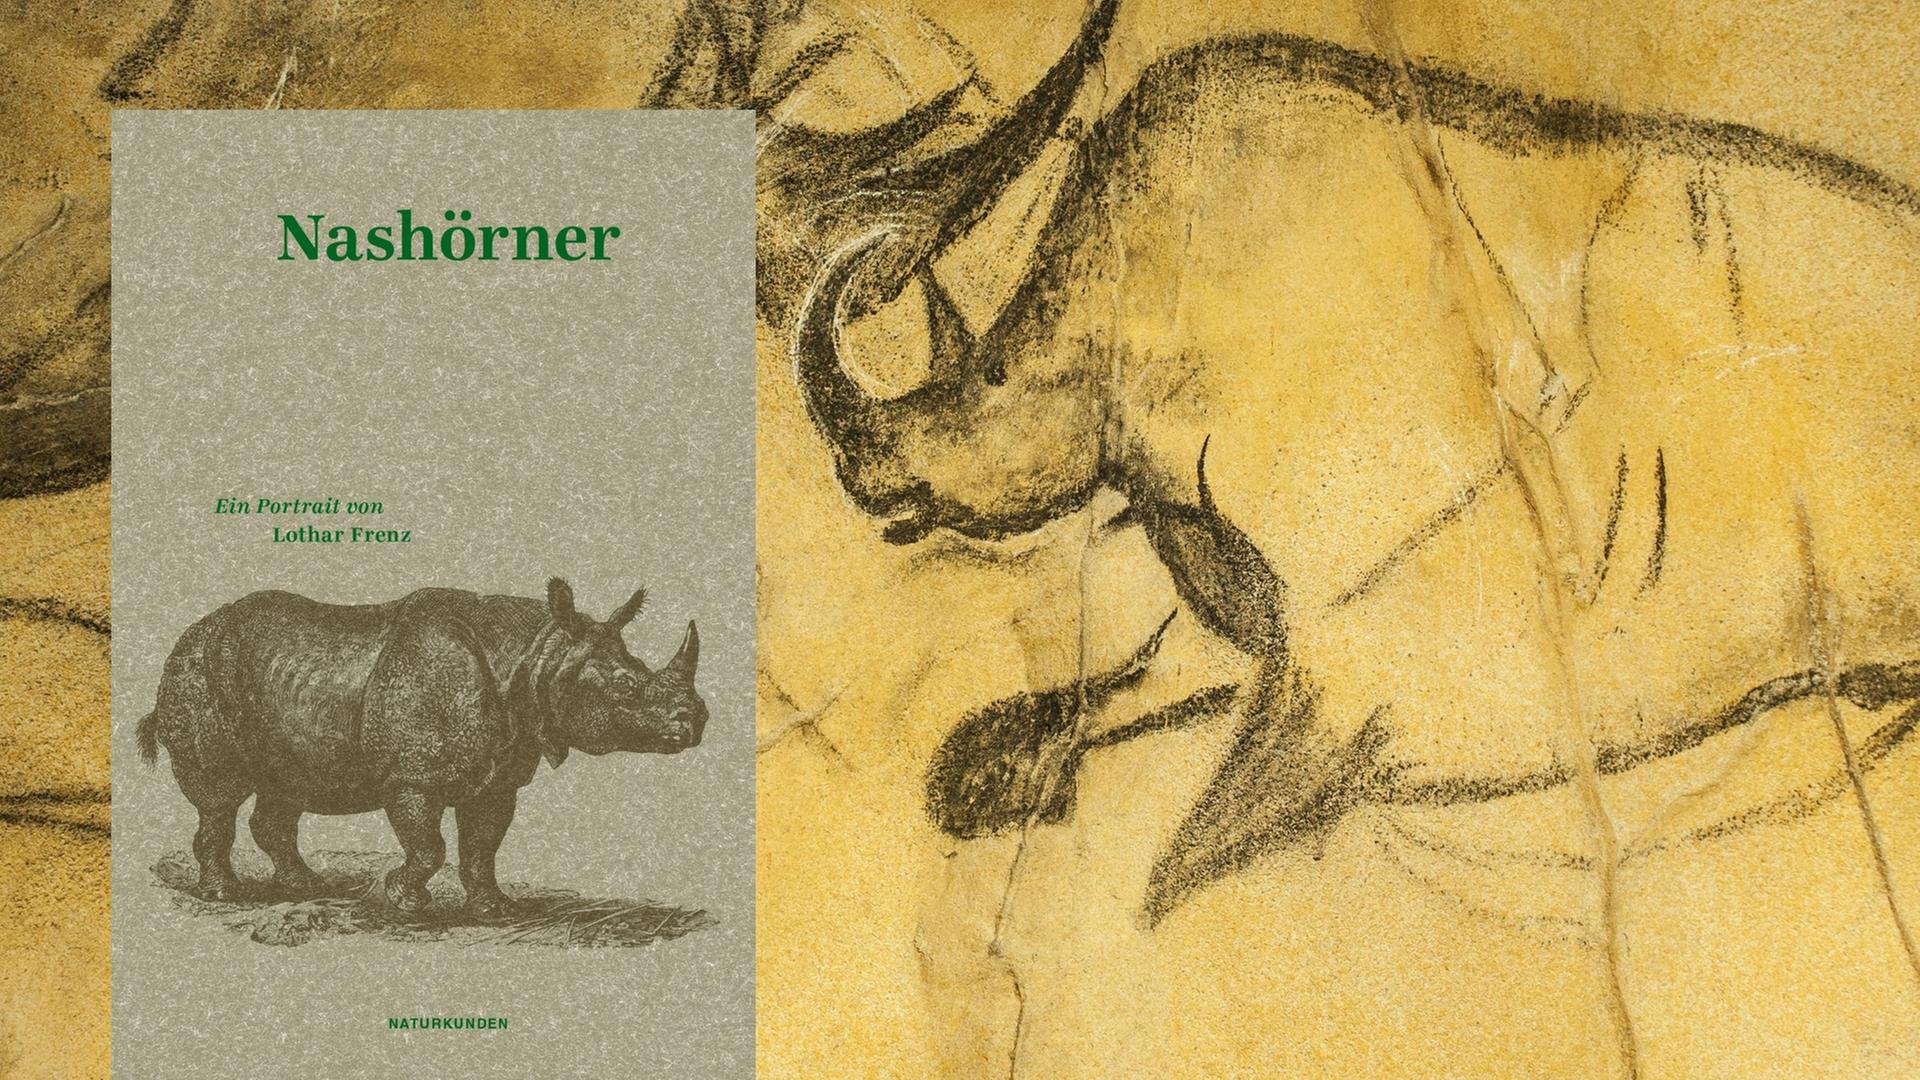 Buchcover: "Nashörner. Ein Portrait" von Lothar Frenz und Judith Schalansky. Im Hintergrund: